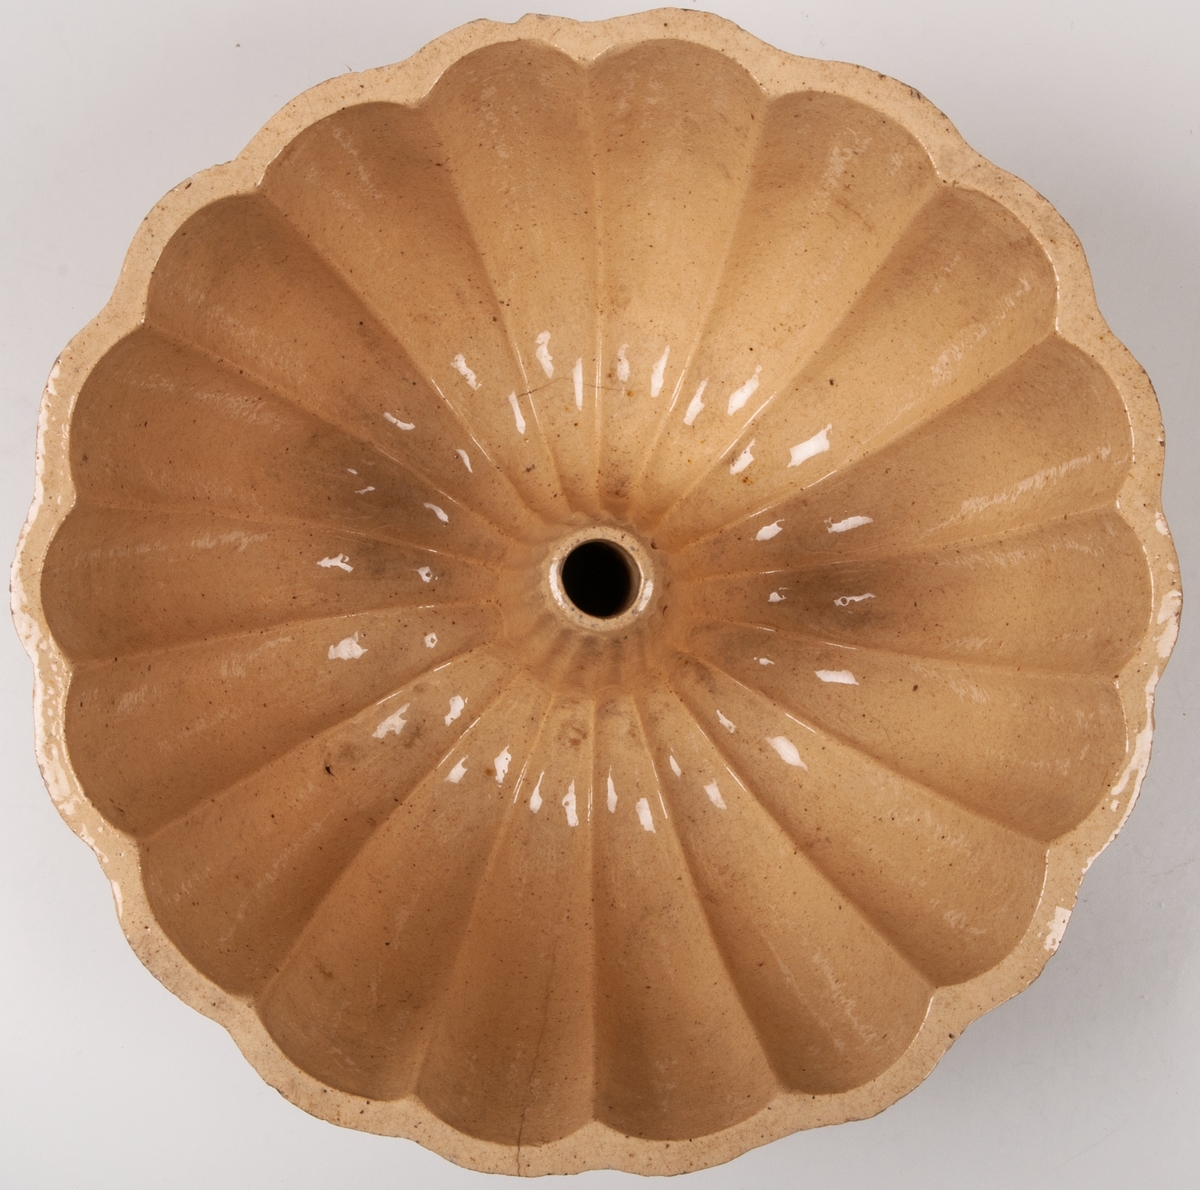 Gul puddingform form av flintgods, rund räfflad med pip.
Märkt:
2 L Höganäs.
KH